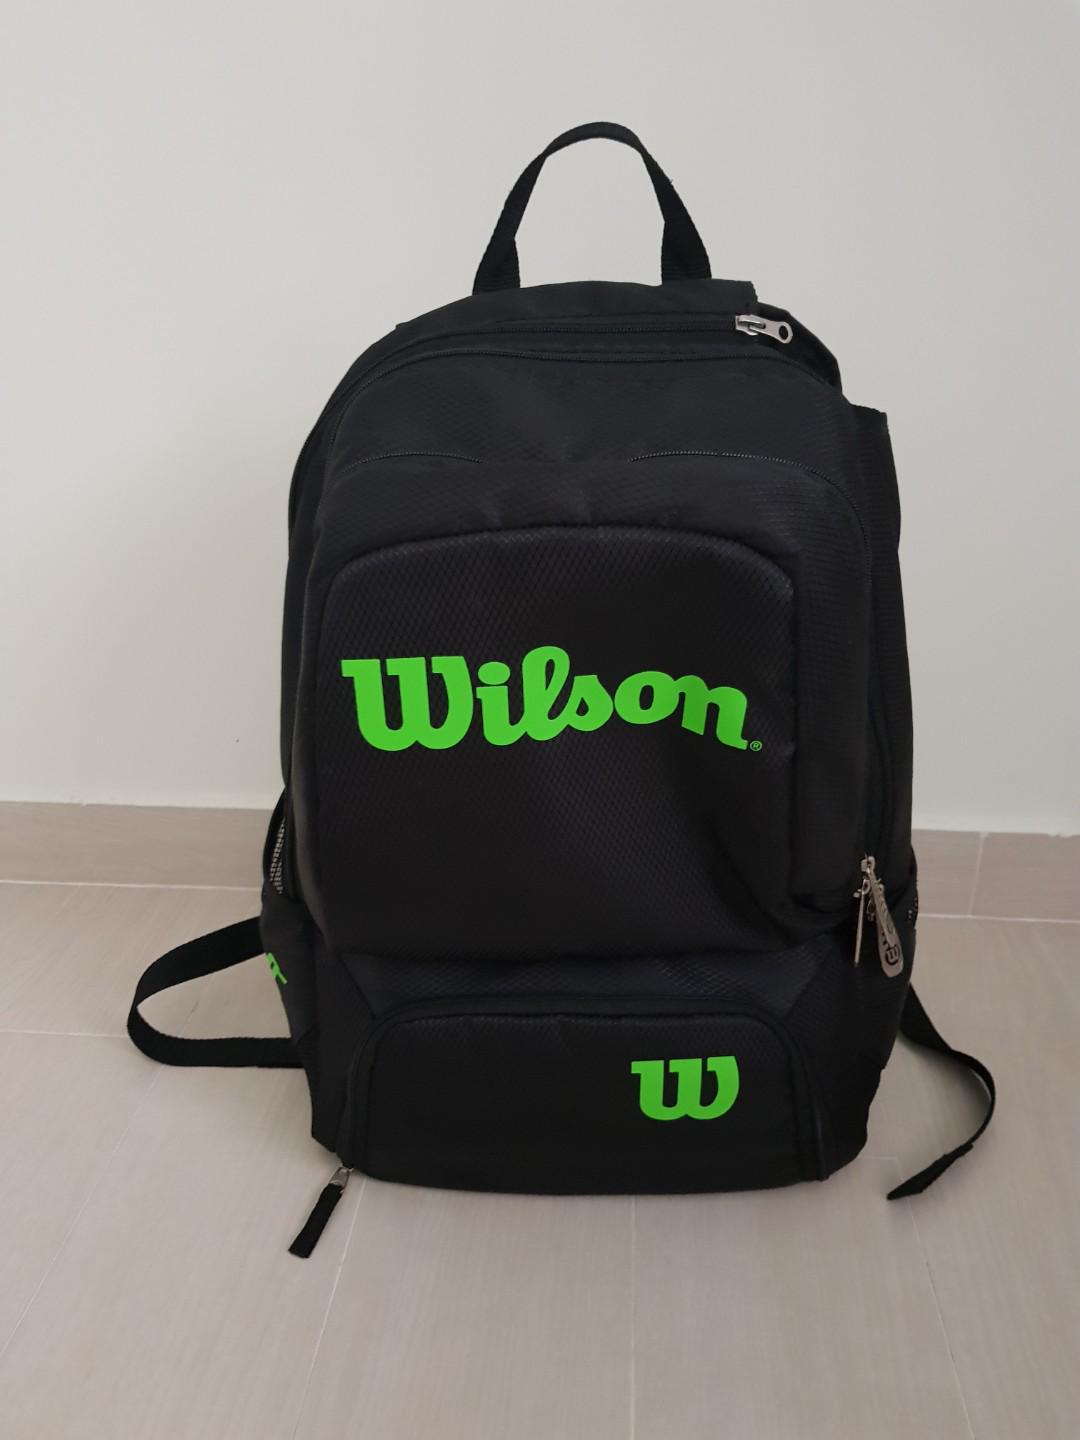 wilson tour backpack black